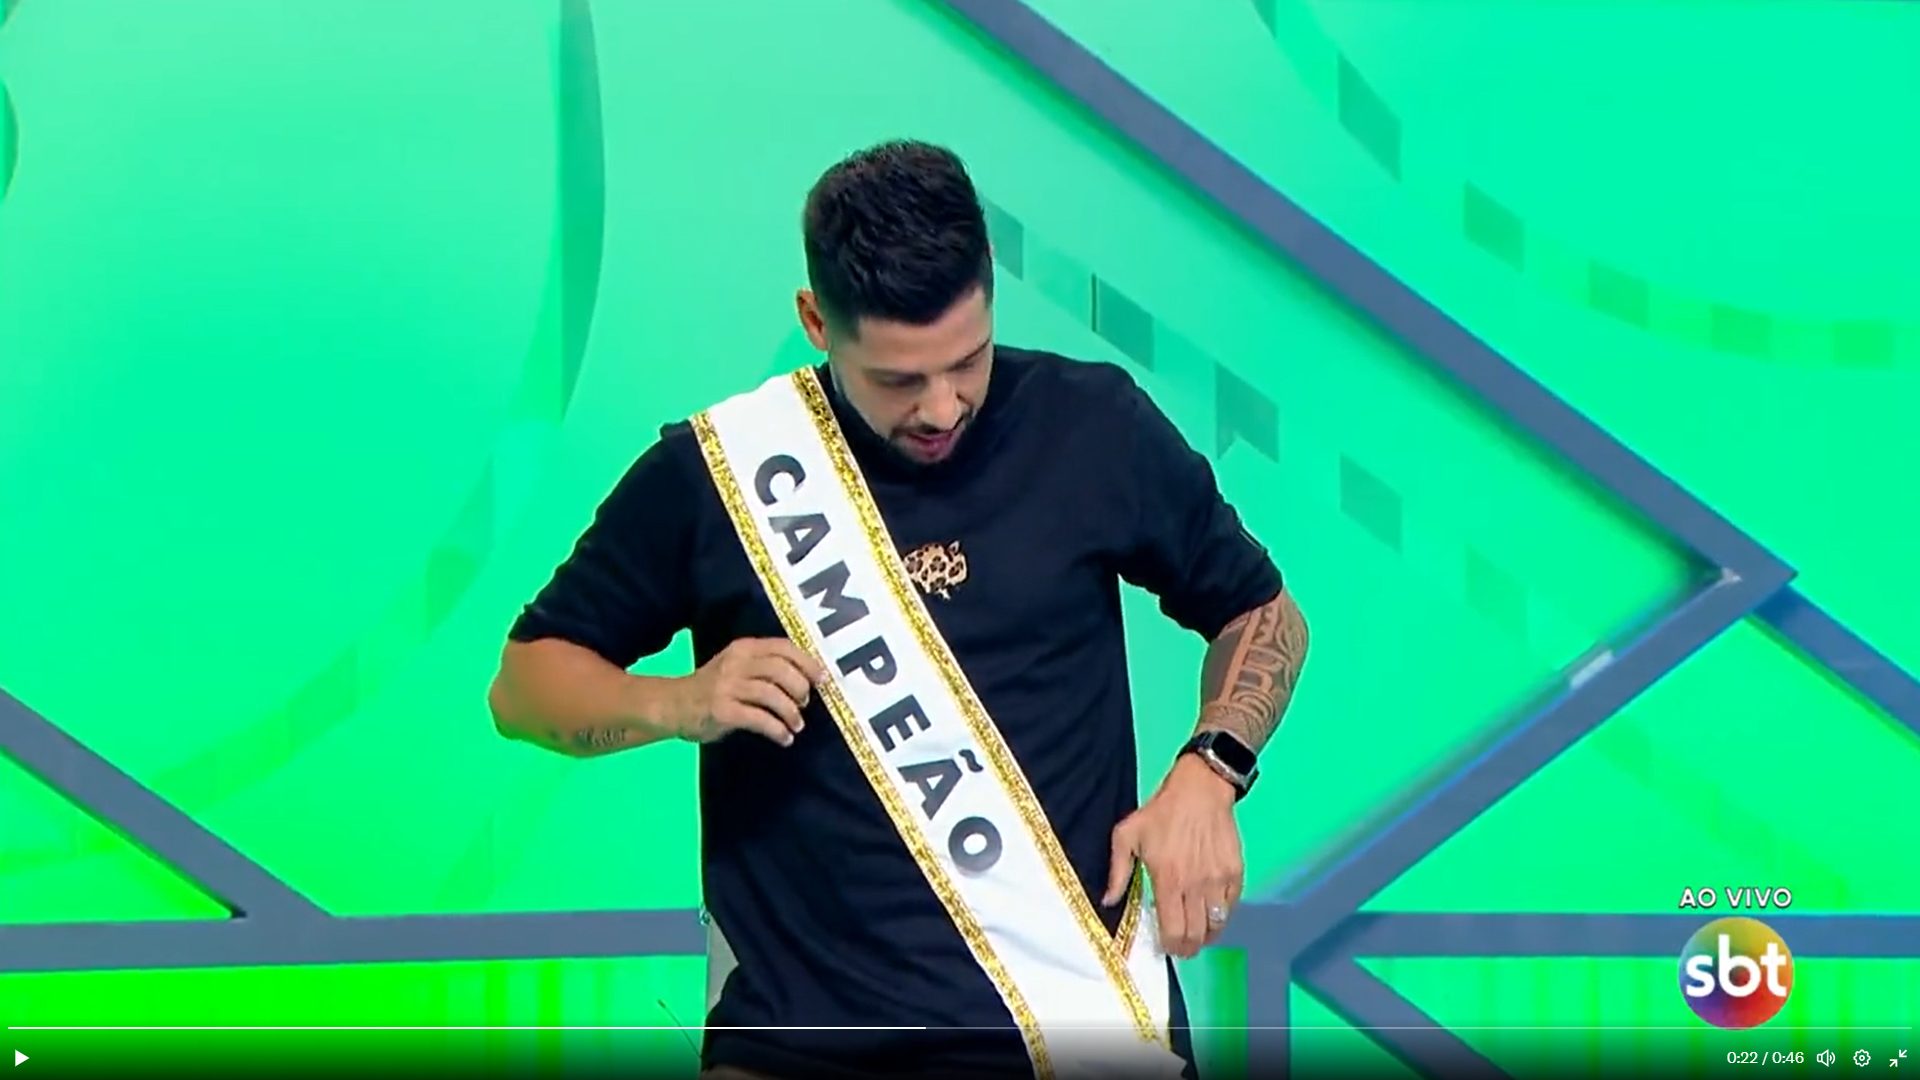 Comentarista Cicinho veste faixa de campeão e polemiza durante programa - Foto: Reprodução/SBT